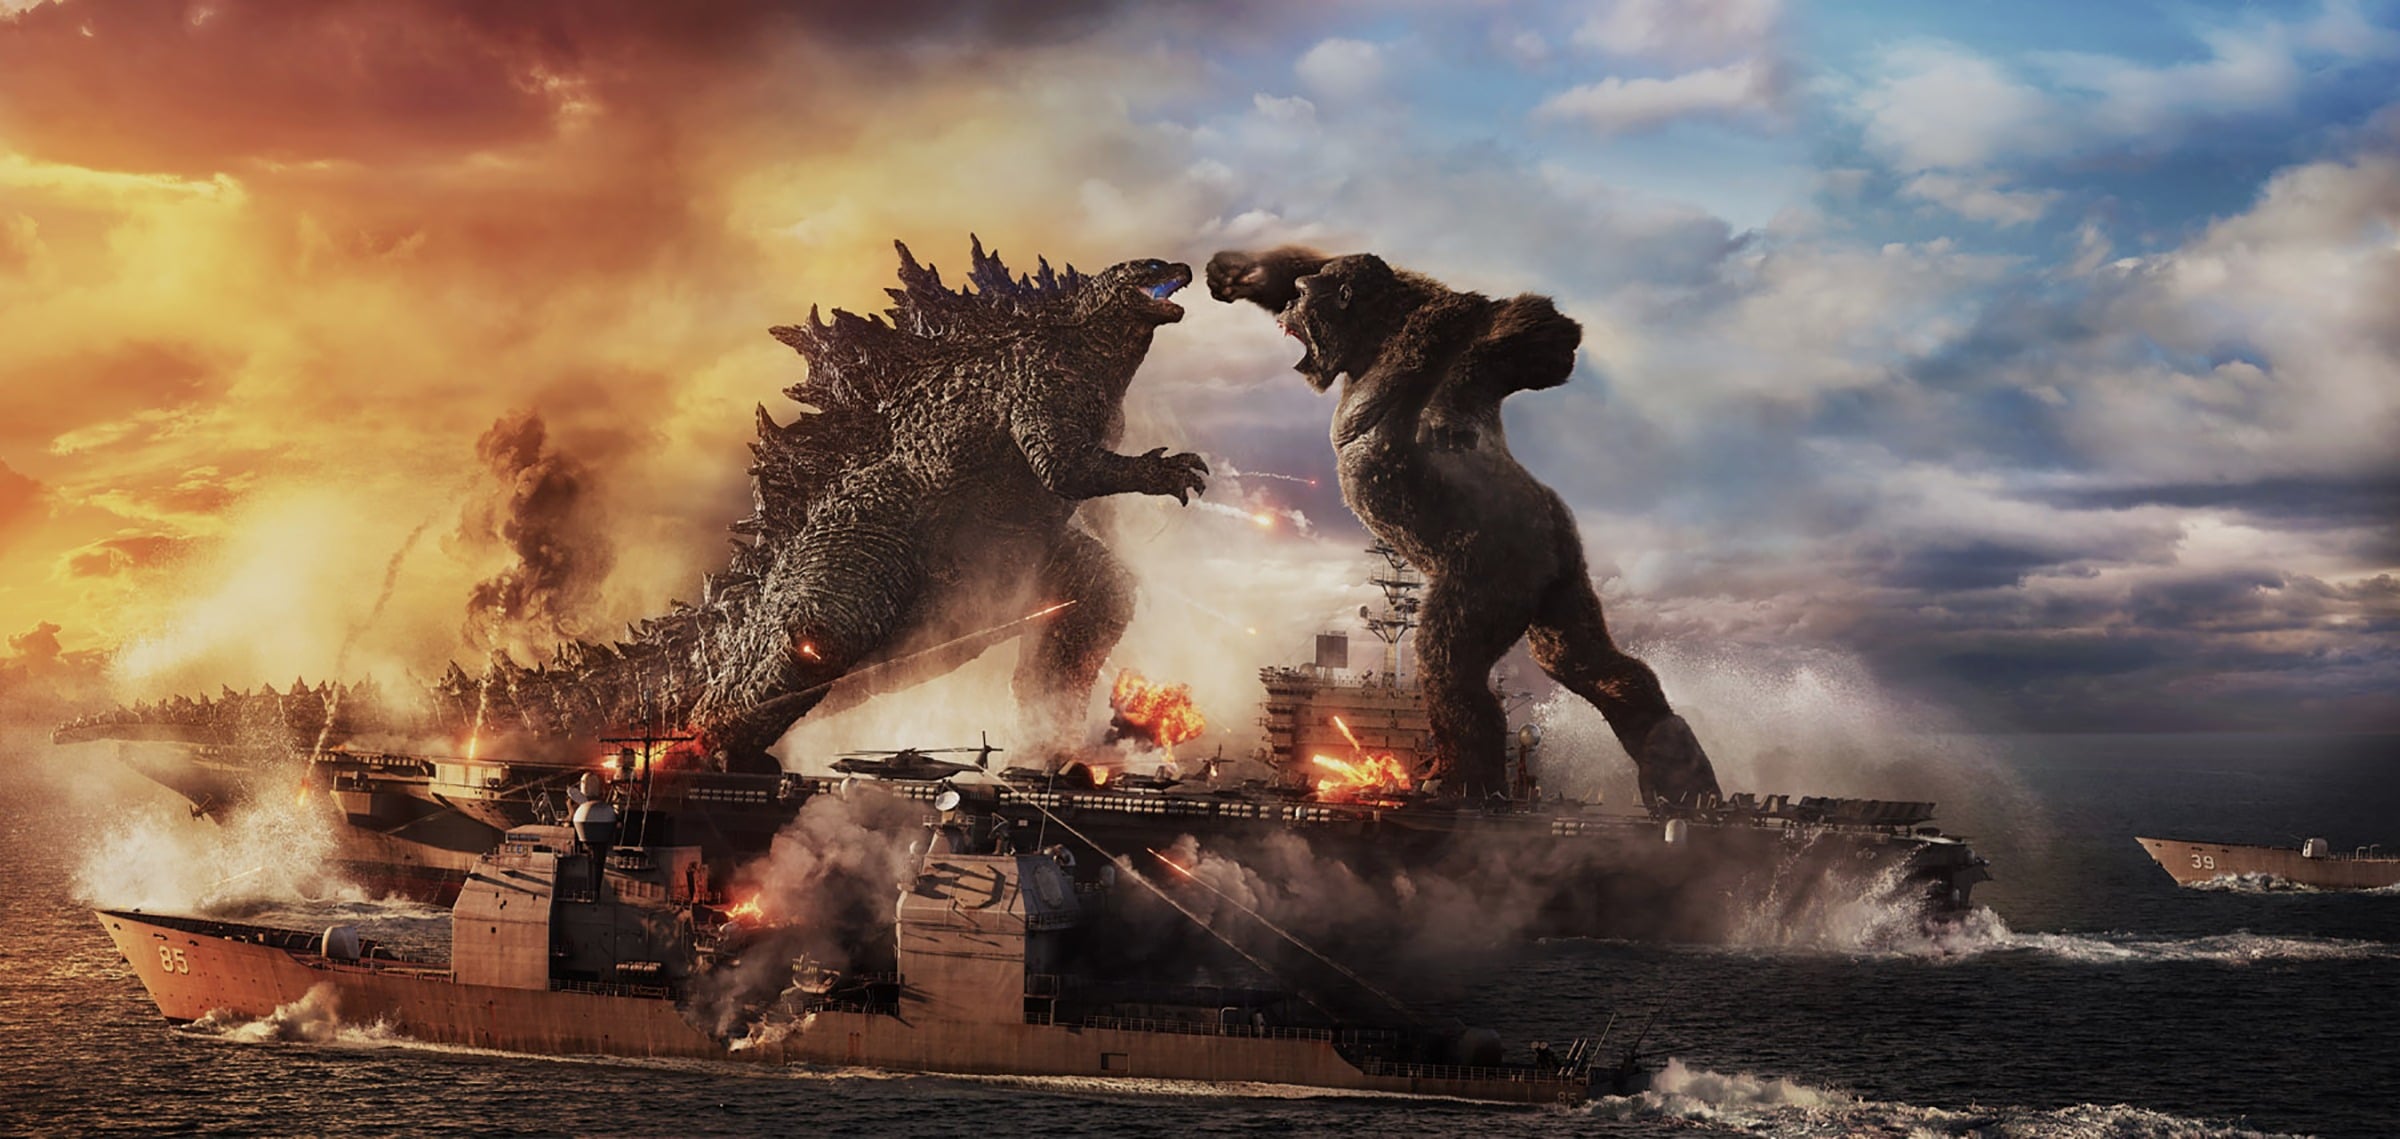 Tuyển Tập 76+ Hình Nền Godzilla Đẹp Nhất Độ Phân Giải Cao